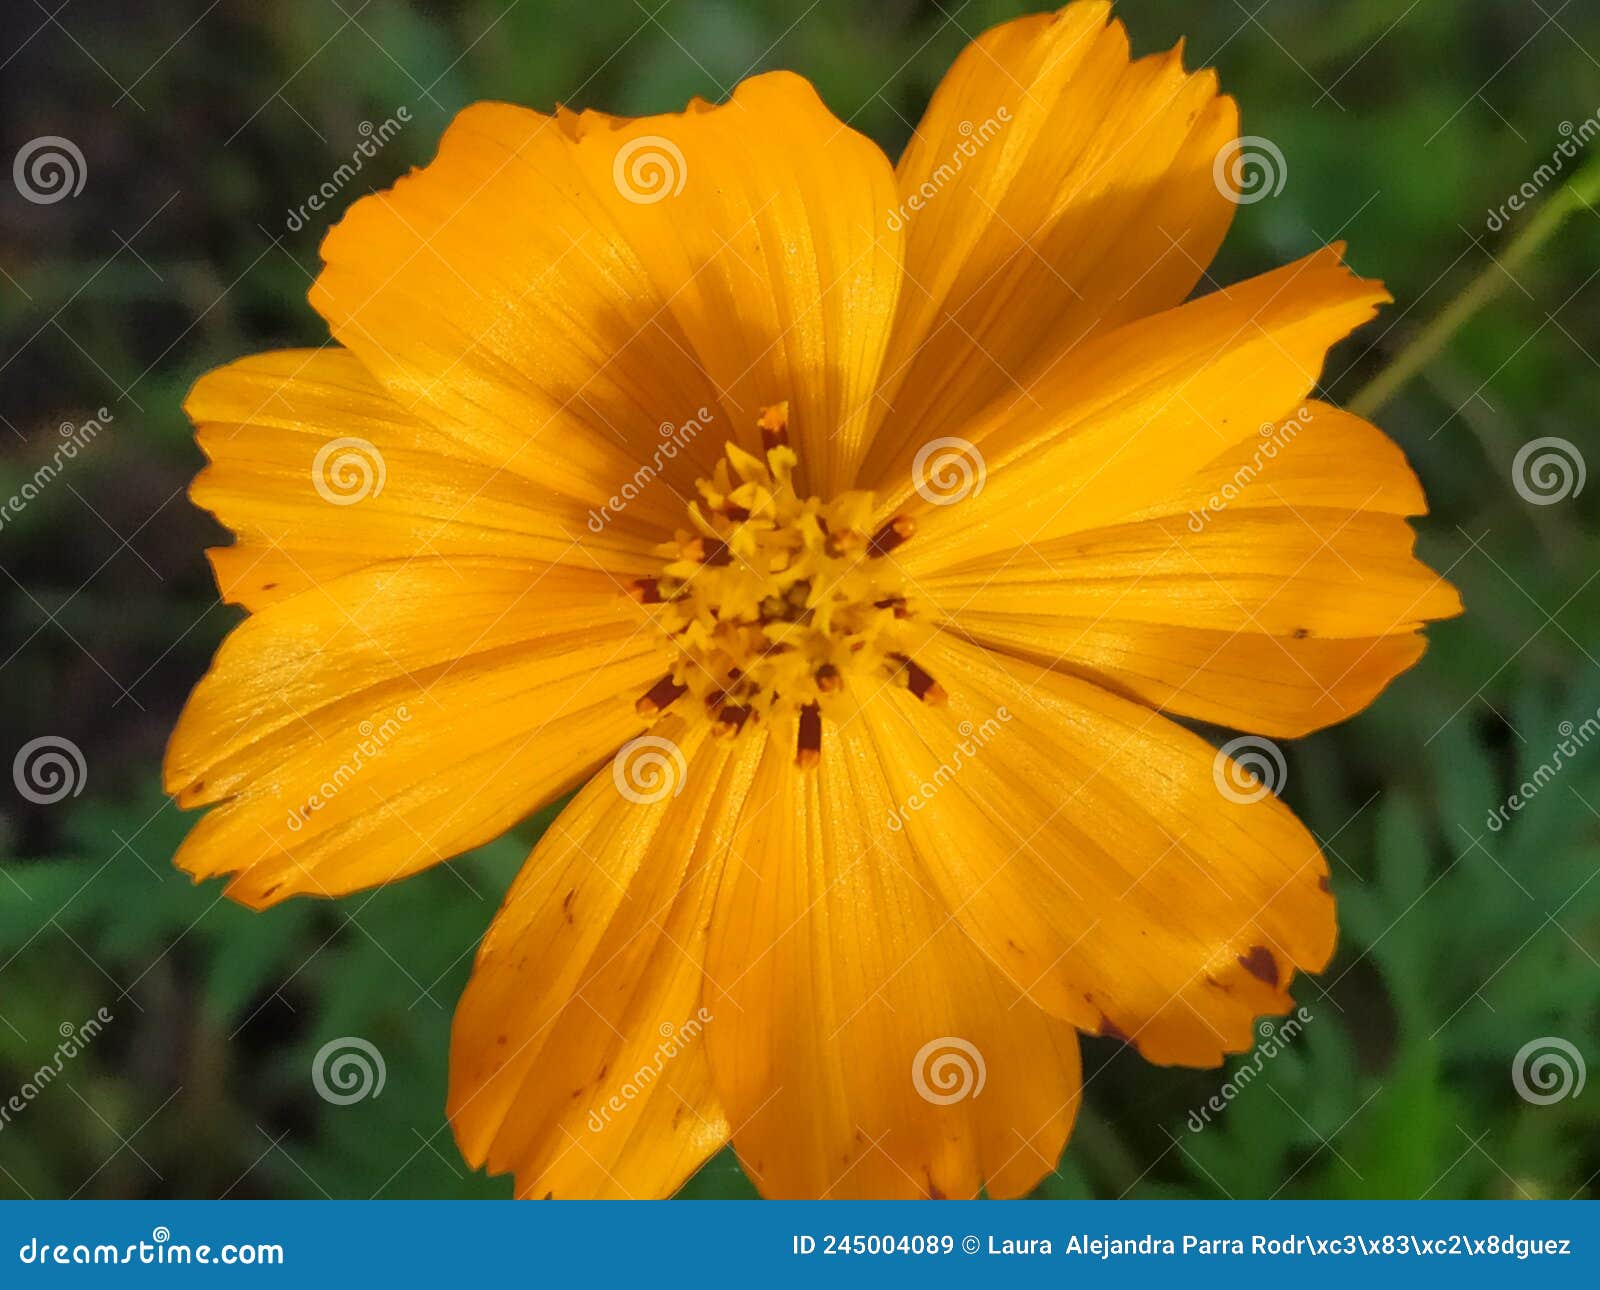 a single yellow cosmo flower in the sun in the middle of the garden. una sola flor de cosmo amarilla en el jardÃÂ­n..